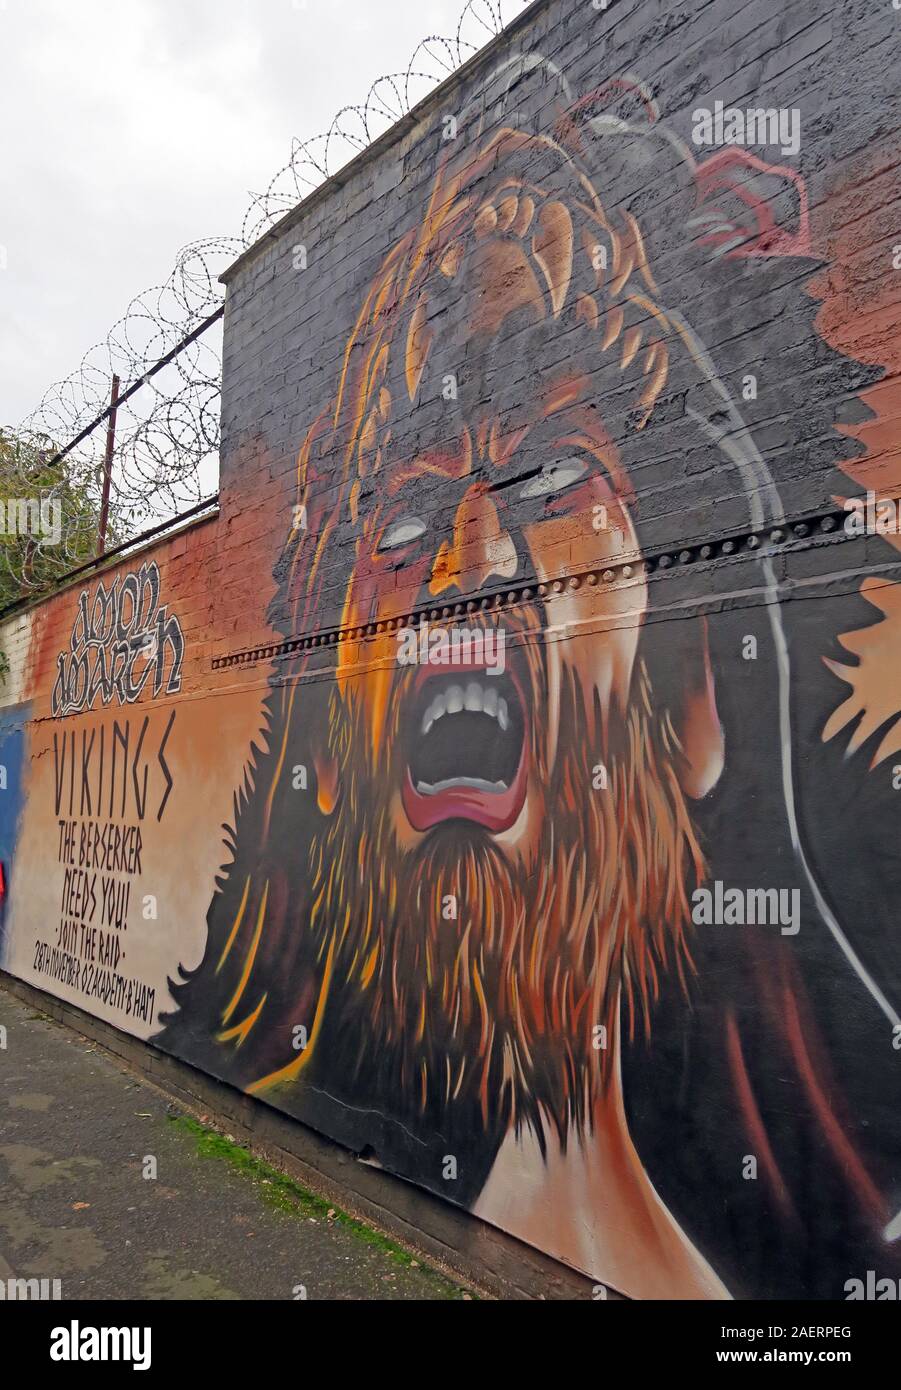 Amon Amarth Bringen Sie Berserker Tour, Graffiti Urban Street Art, in Floodgate St, Digbeth, Bordesley & Highgate, Birmingham, West Midlands, England, Großbritannien, B5 5ST Stockfoto